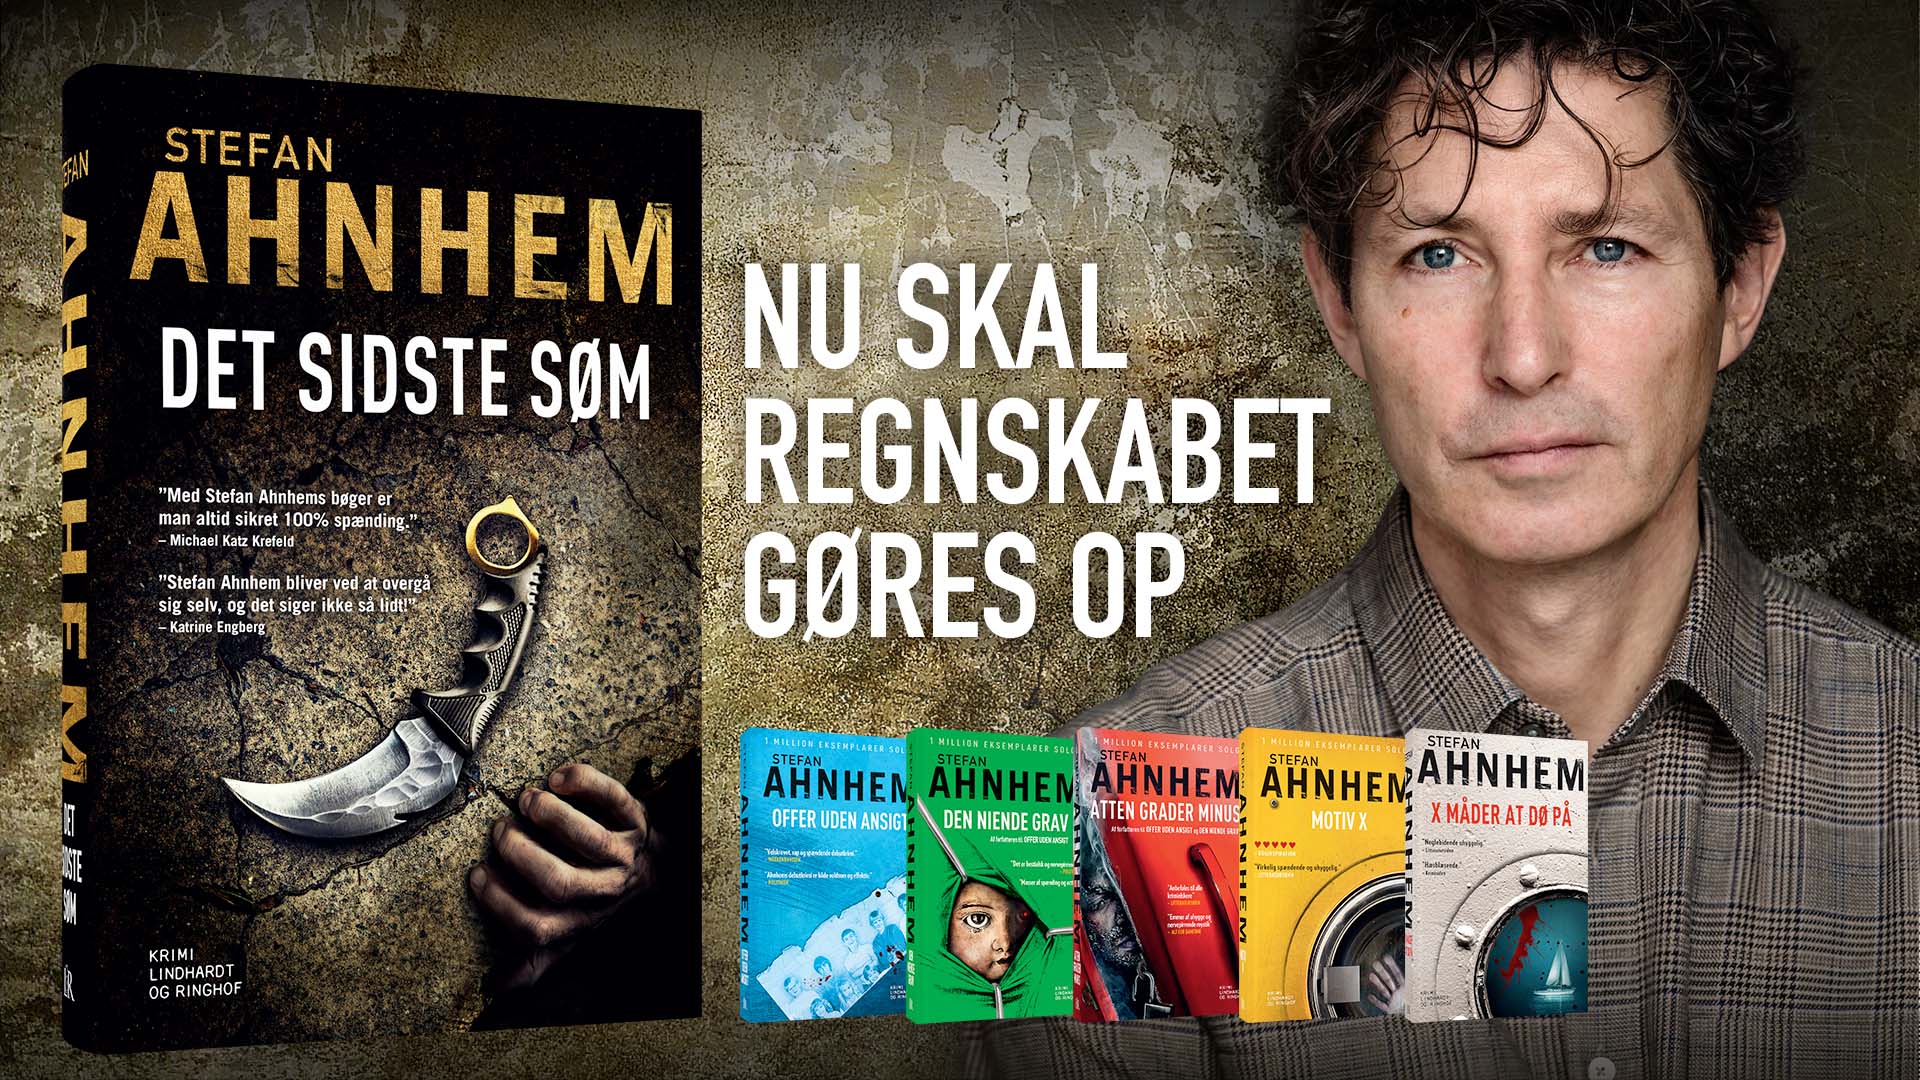 Ahnhem fornyer svenske krimi. Nu kommer og sidste bog i Fabian Risk-serien